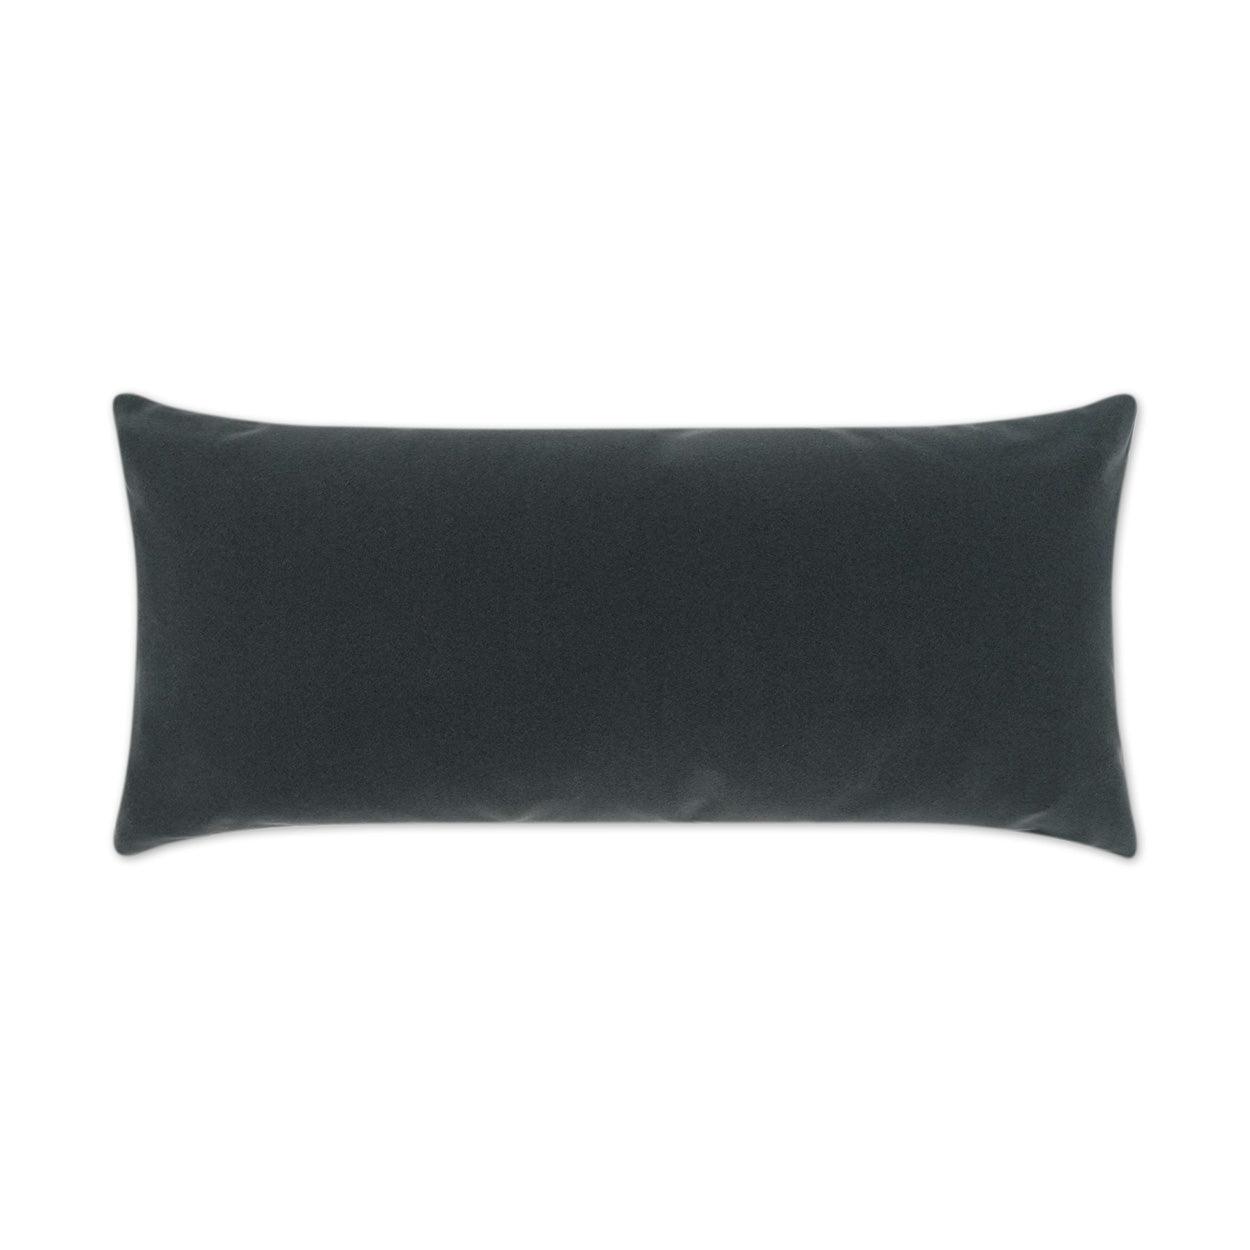 LOOMLAN Outdoor - Outdoor Sundance Duo Lumbar Pillow - Charcoal - Outdoor Pillows